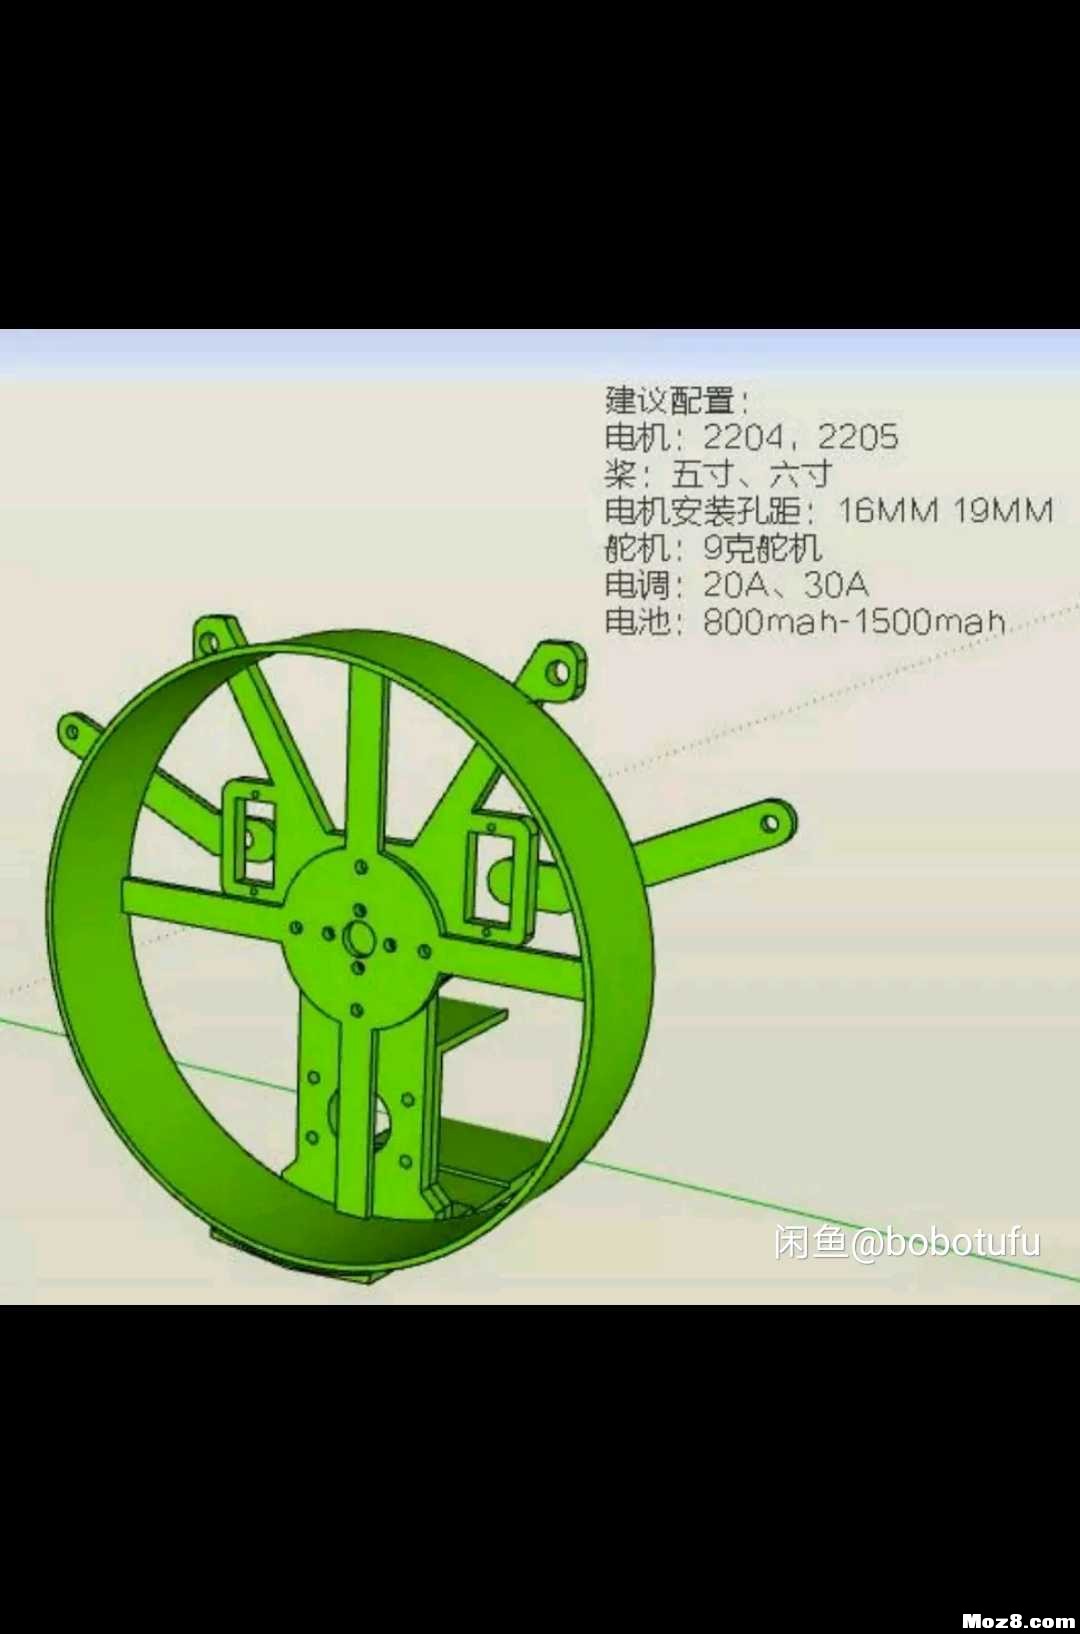 遥控动力伞 3D机架重画 模型,固定翼,舵机,电调,电机 作者:bobotufu 7501 